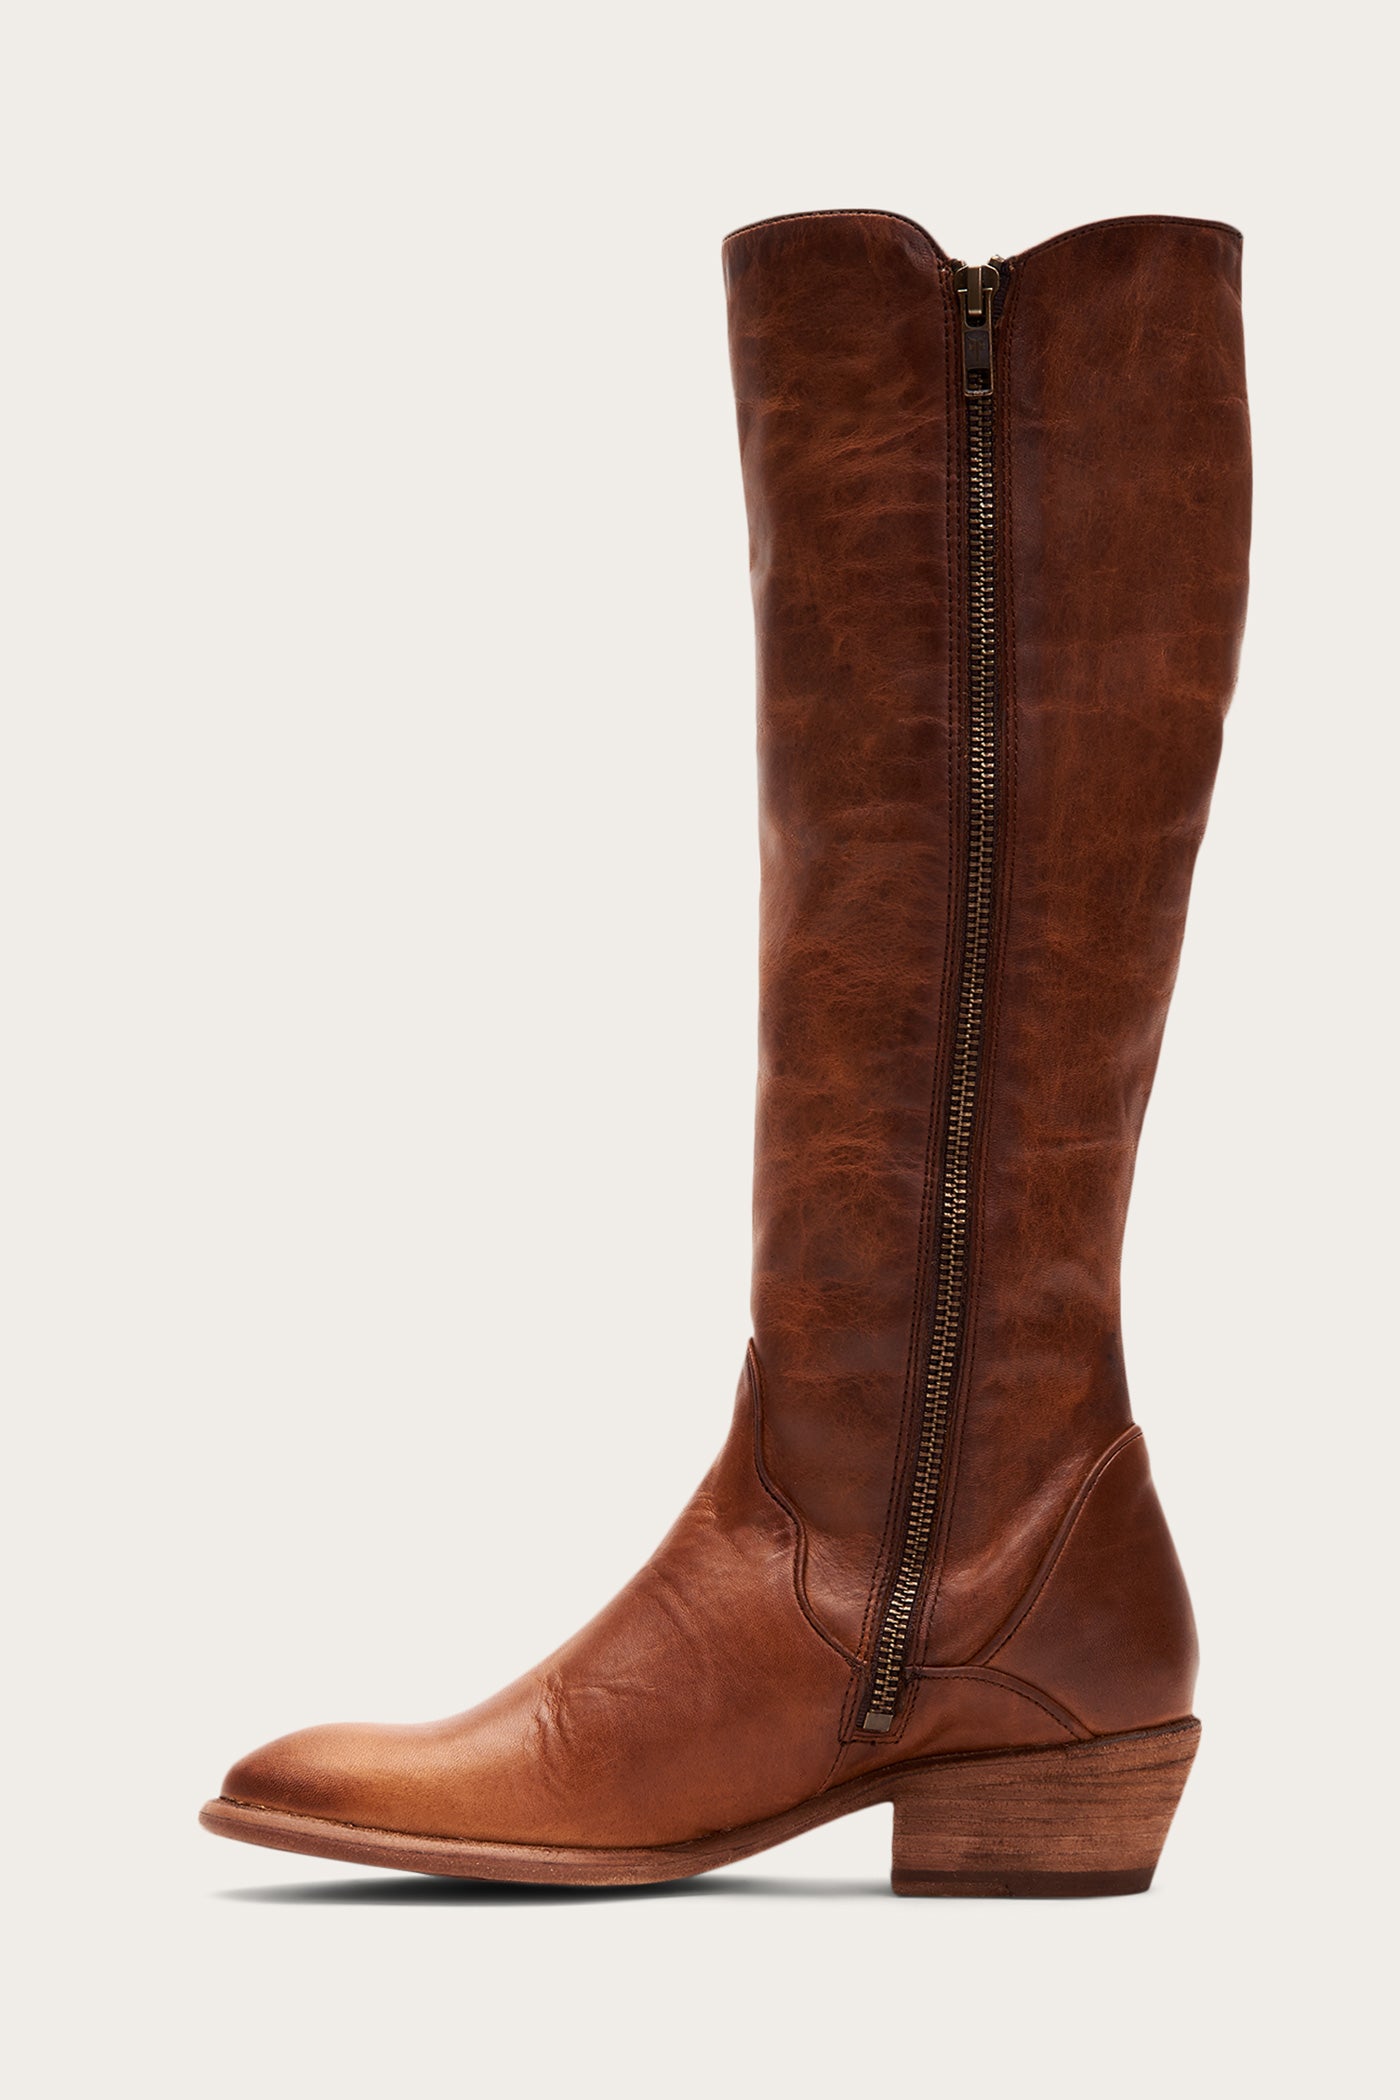 caramel knee high boots